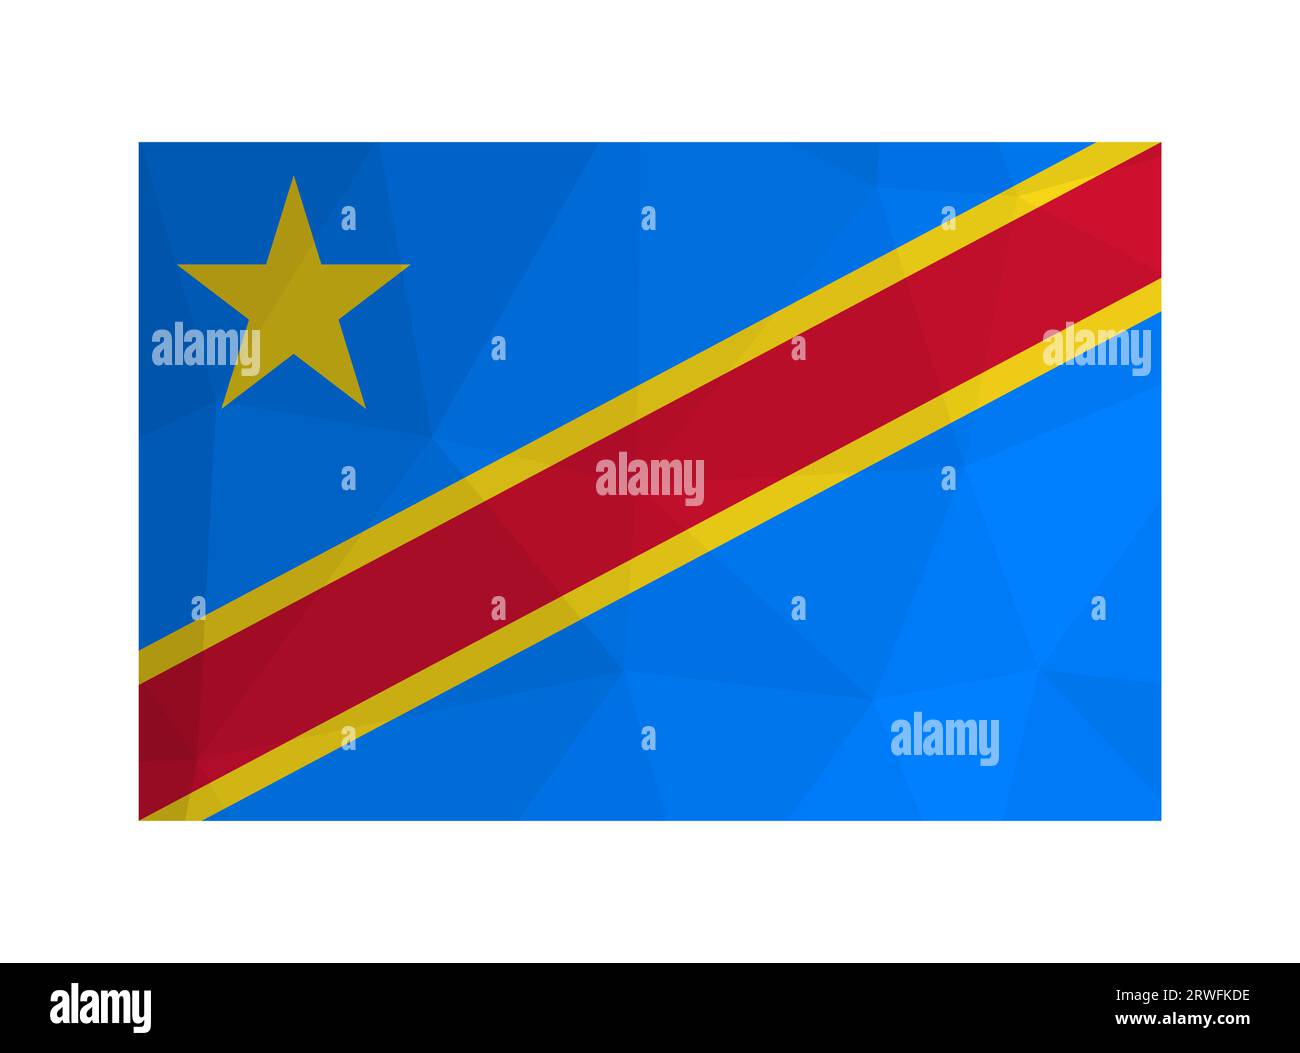 Vektor-isolierte Abbildung. Offizielles Symbol der Demokratischen Republik Kongo. Nationalflagge in Rot, Gelb; blaue Farbe mit Stern. Design in niedriger p Stock Vektor